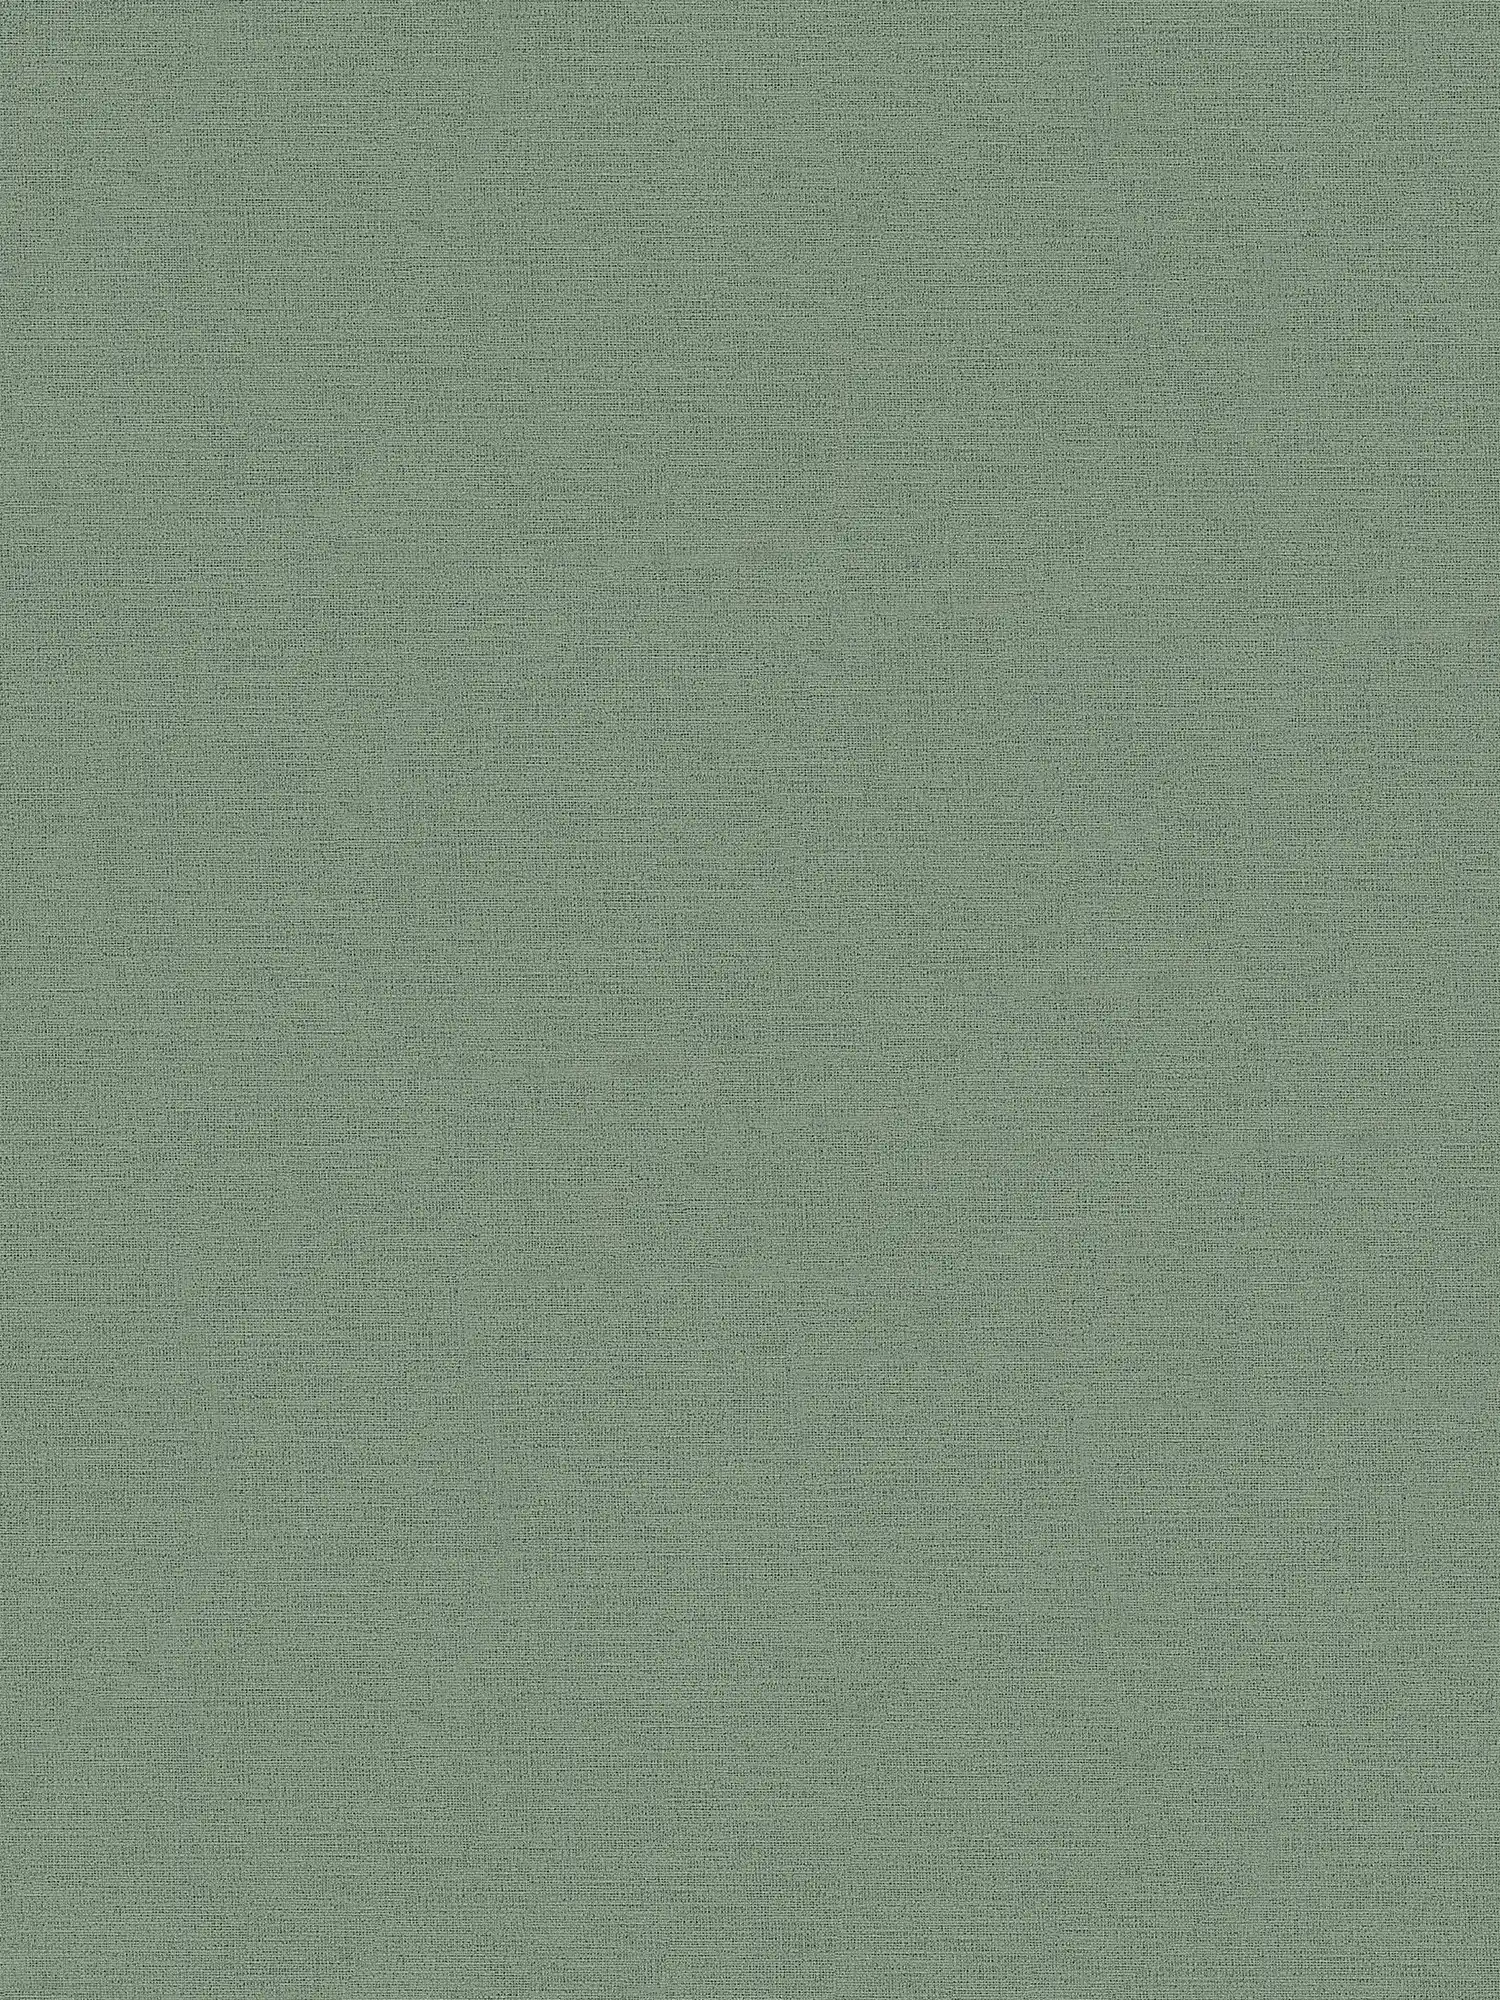 Carta da parati verde grigio Verde oliva, opaca e con ottica tessile
